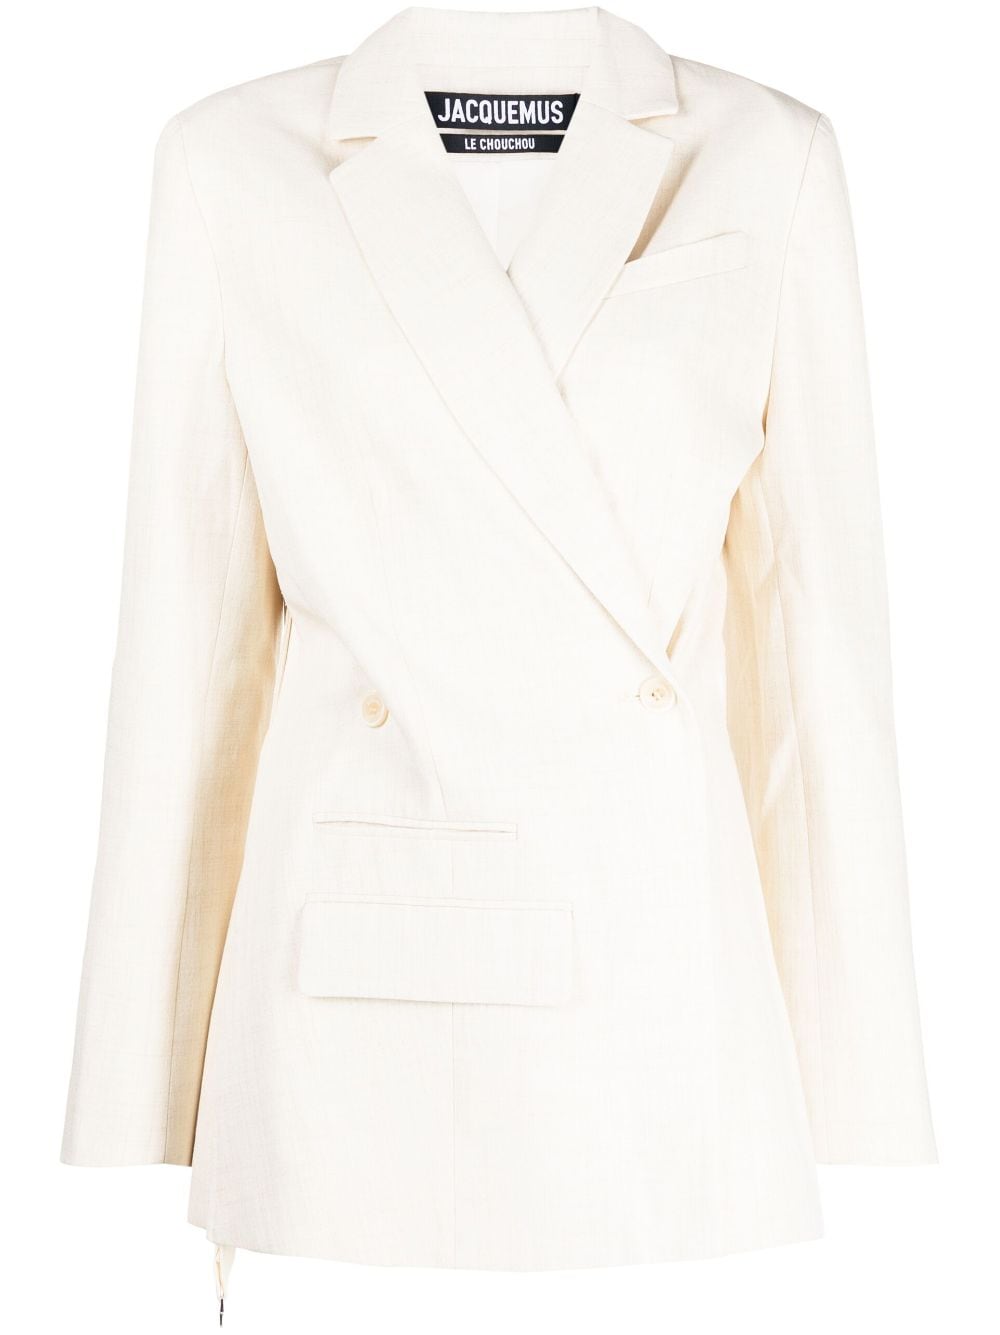 无品牌词语 设计新颖 白色亚麻混纺女式不对称双排扣西装外套